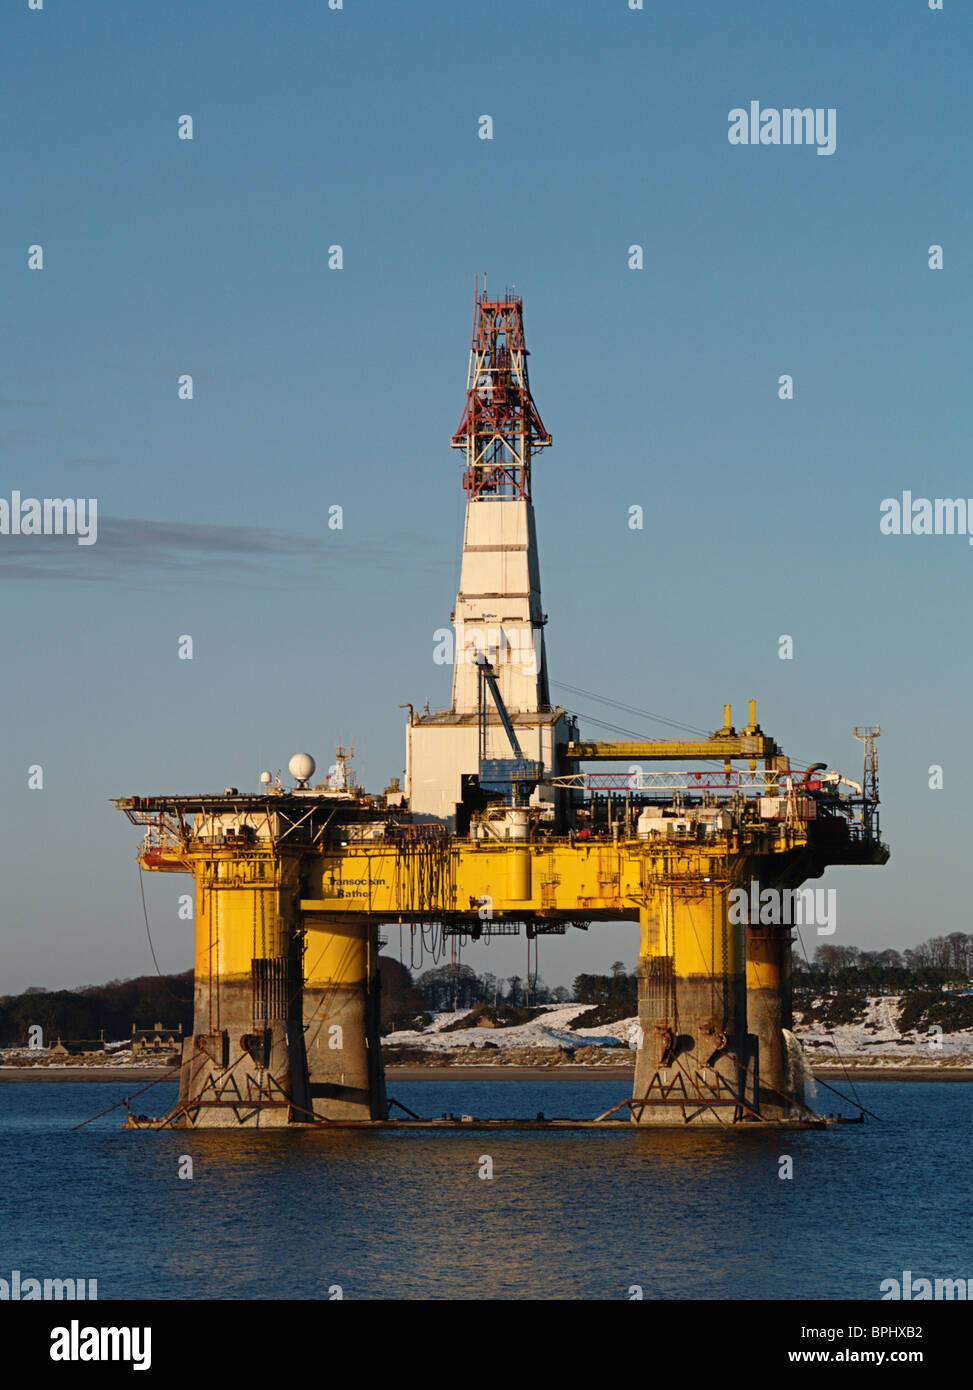 Semi-submersible Ölplattform Transocean eher im Cromarty Firth Schottlands. Stockfoto